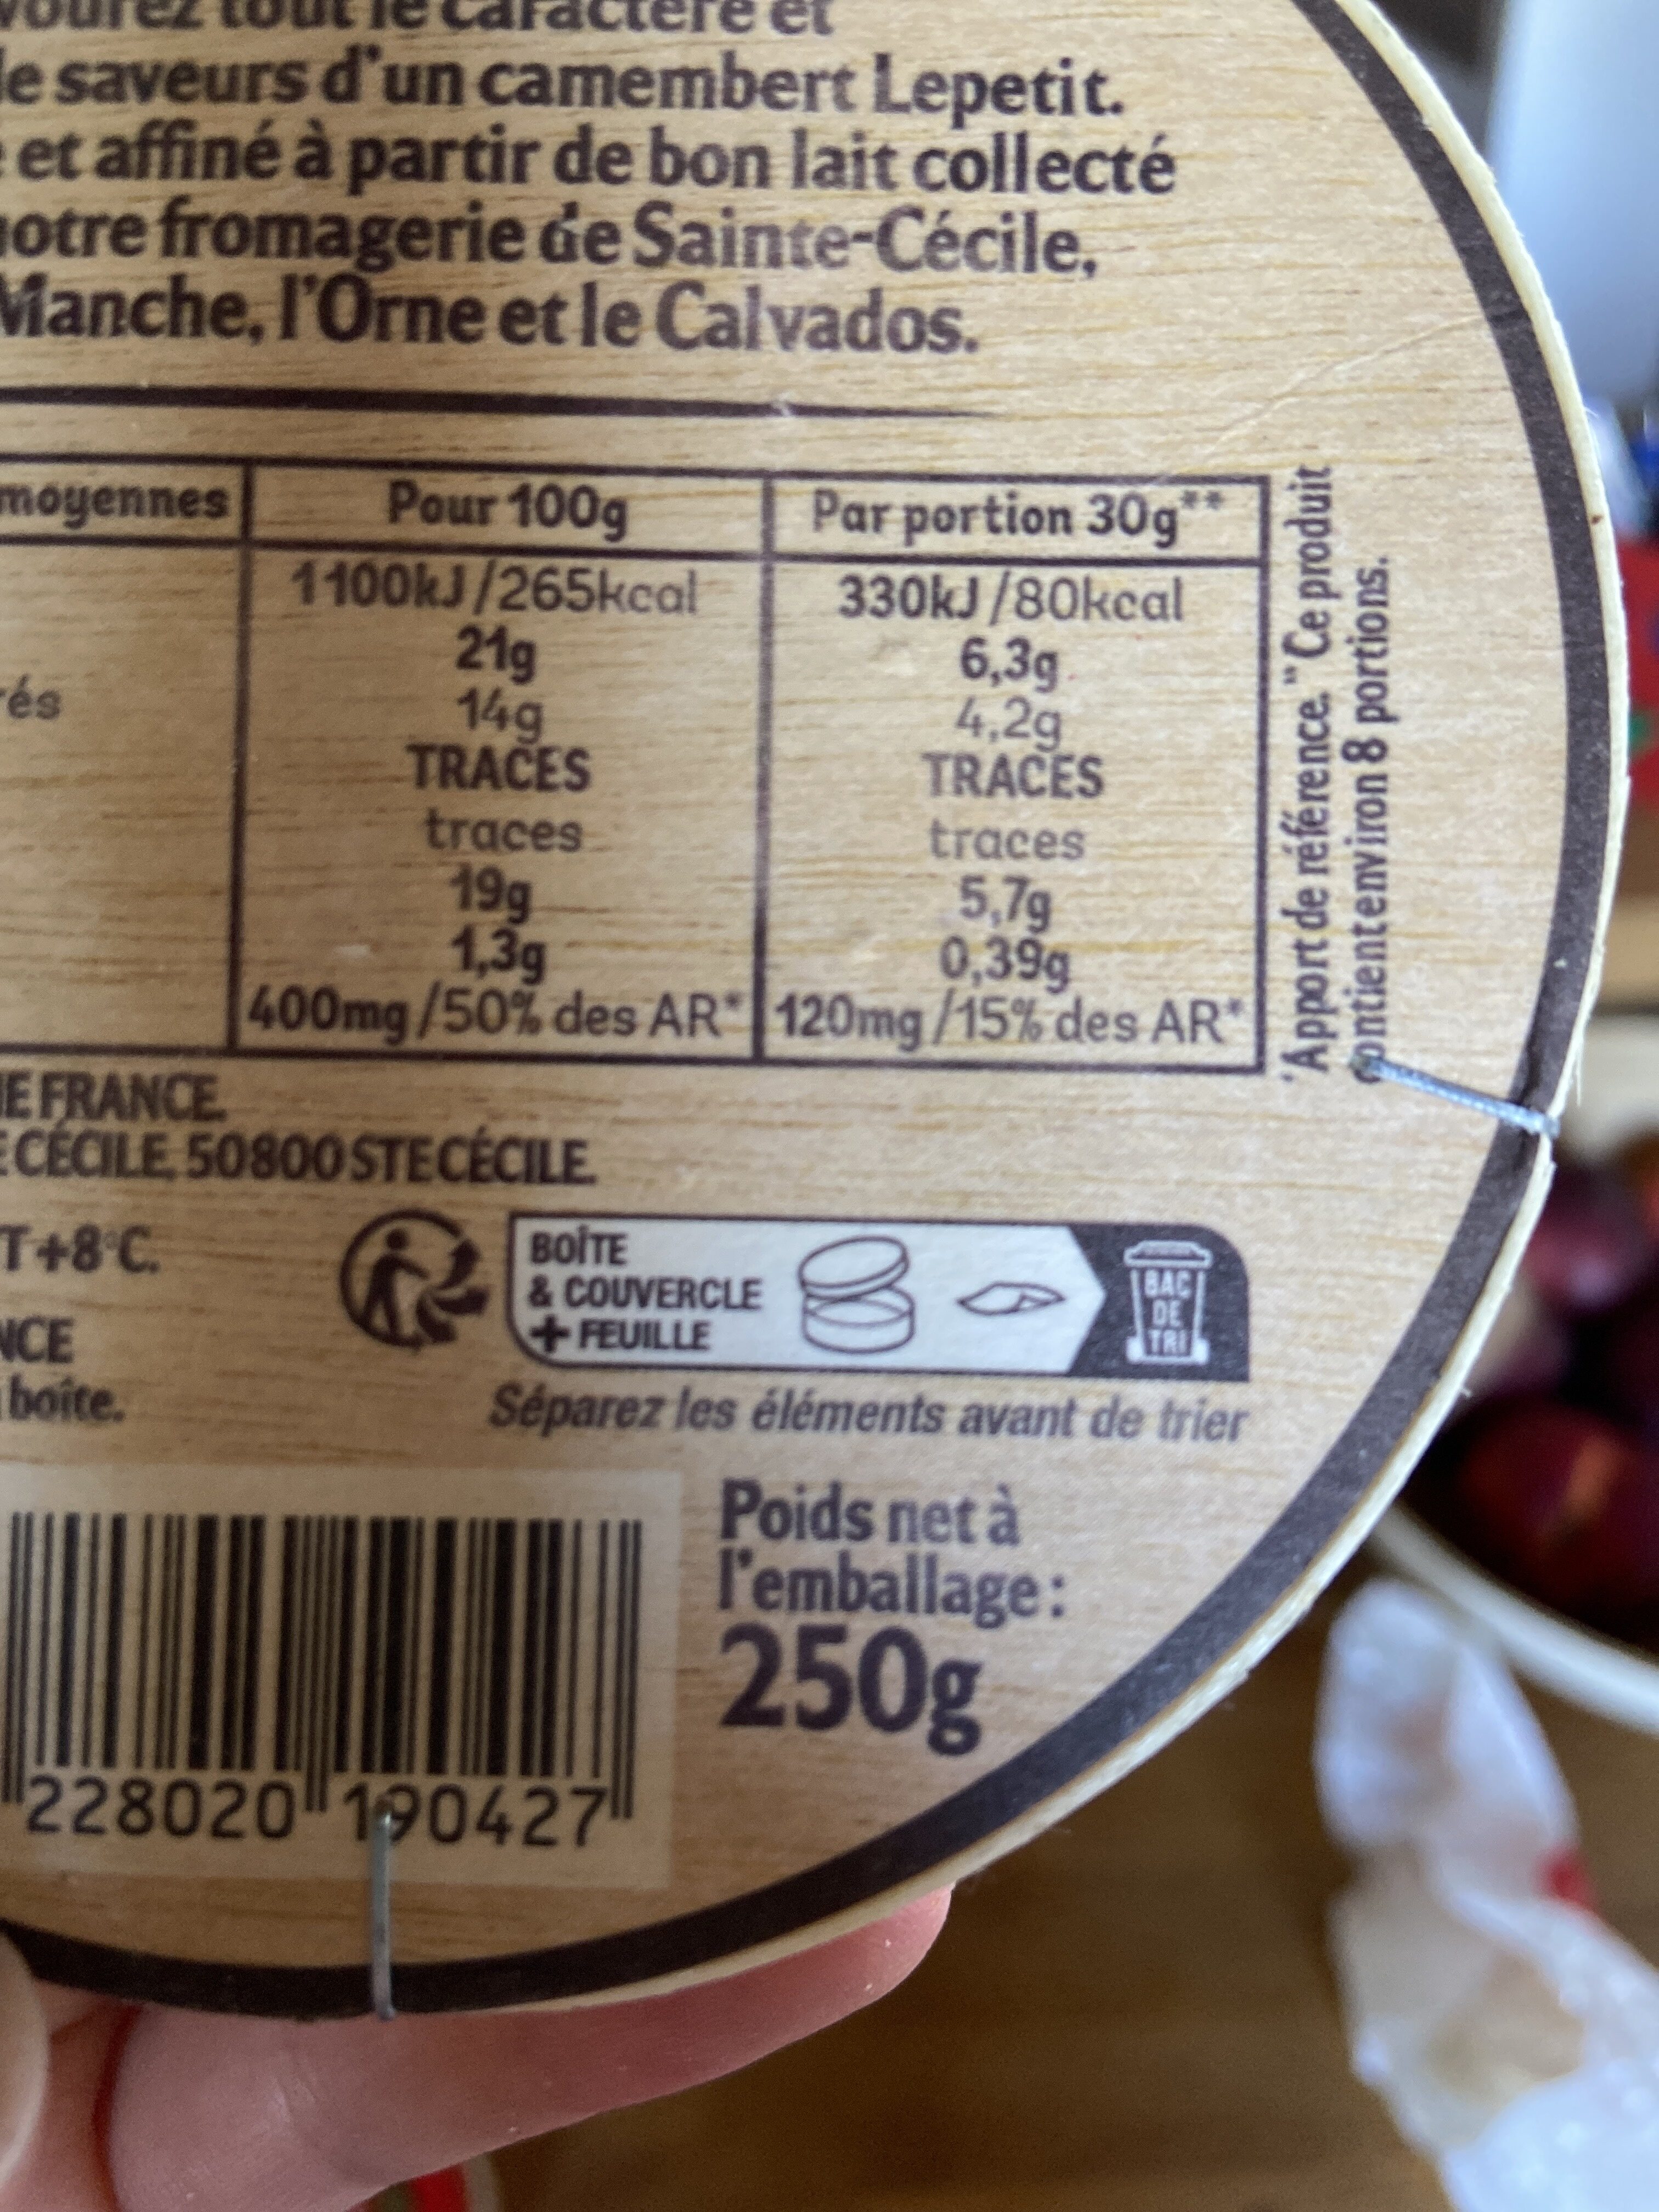 Camembert lepetit 250g 21% - Instruction de recyclage et/ou informations d'emballage